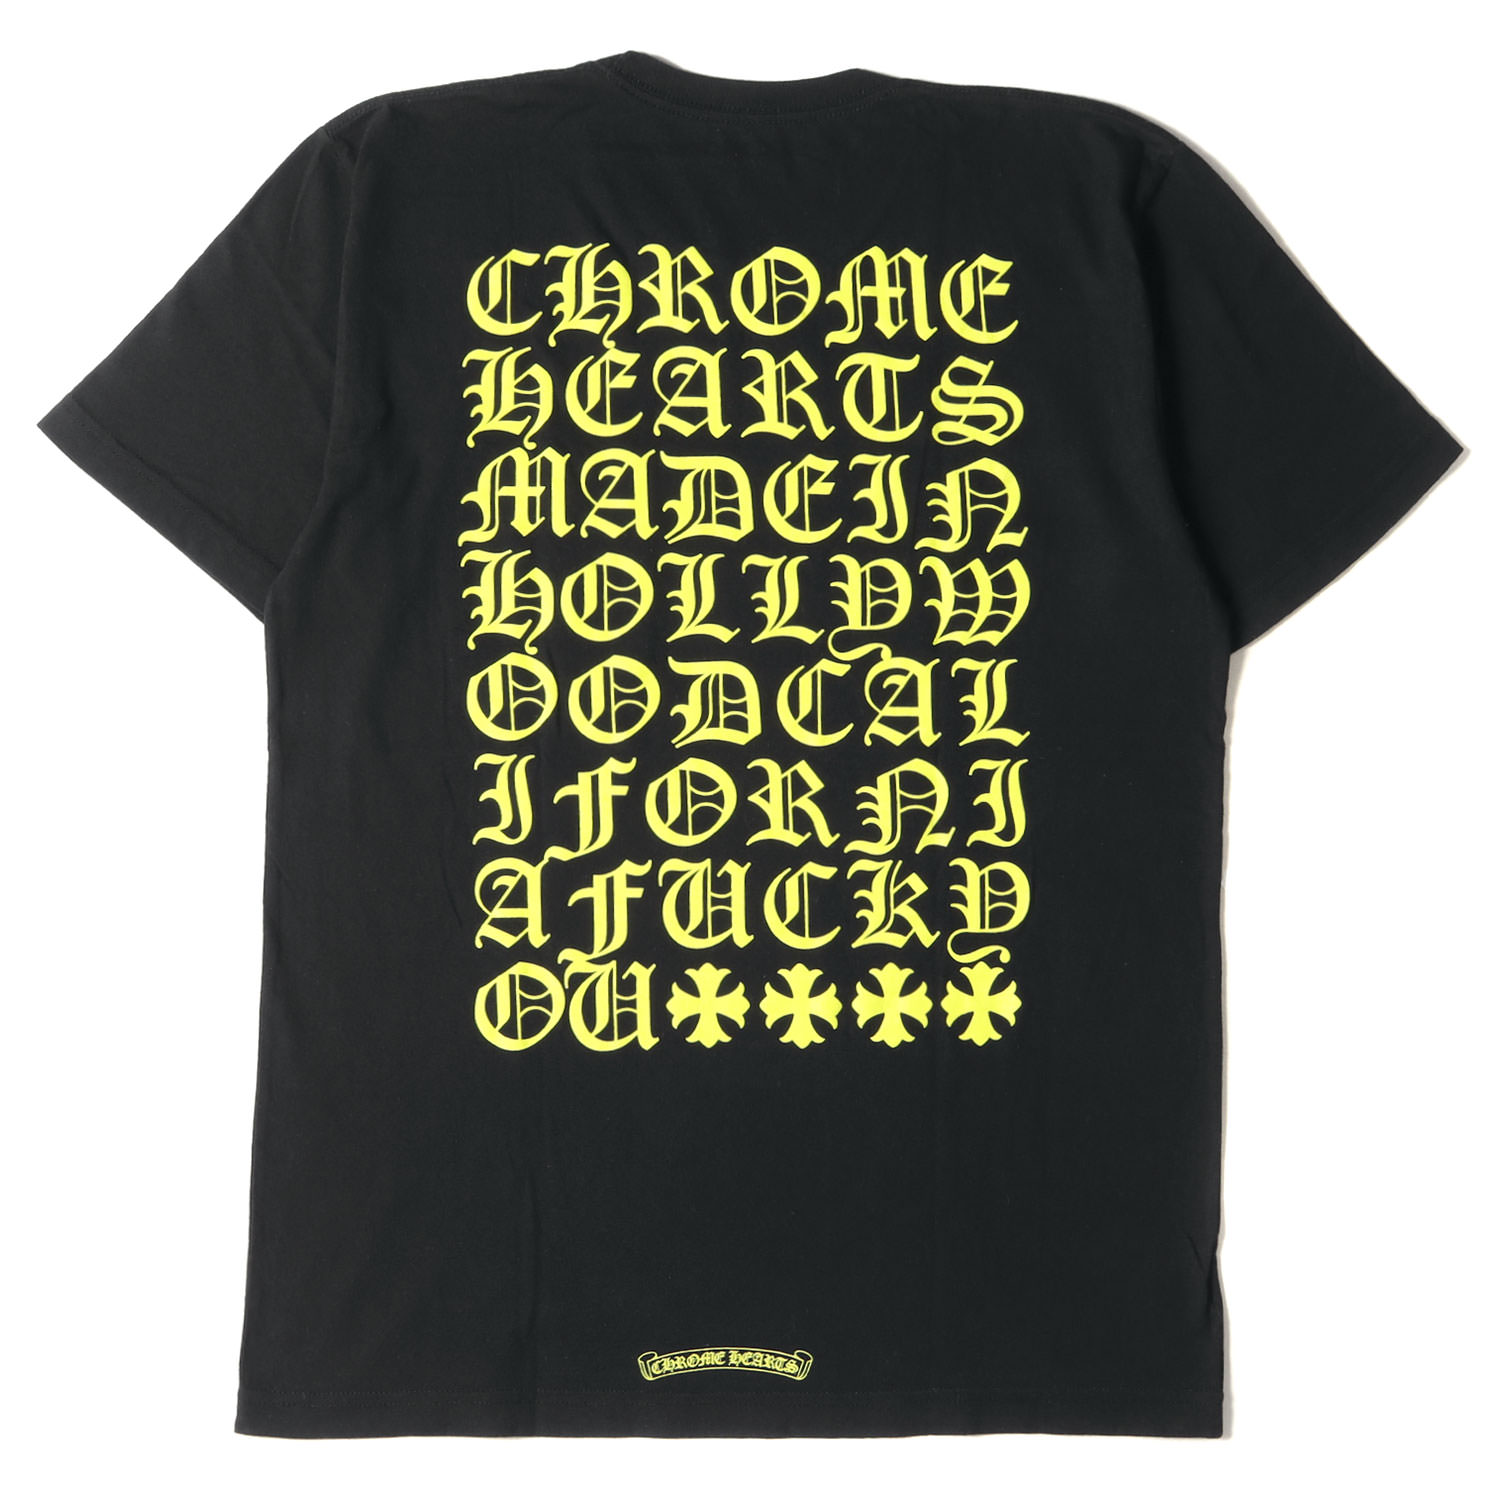 CHROME HEARTS クロムハーツ Tシャツ サイズ:L 20SS ネオンカラー スクロールラベル ポケット ブランドロゴ プリント 半袖 ブラック 黒 トップス カットソー 